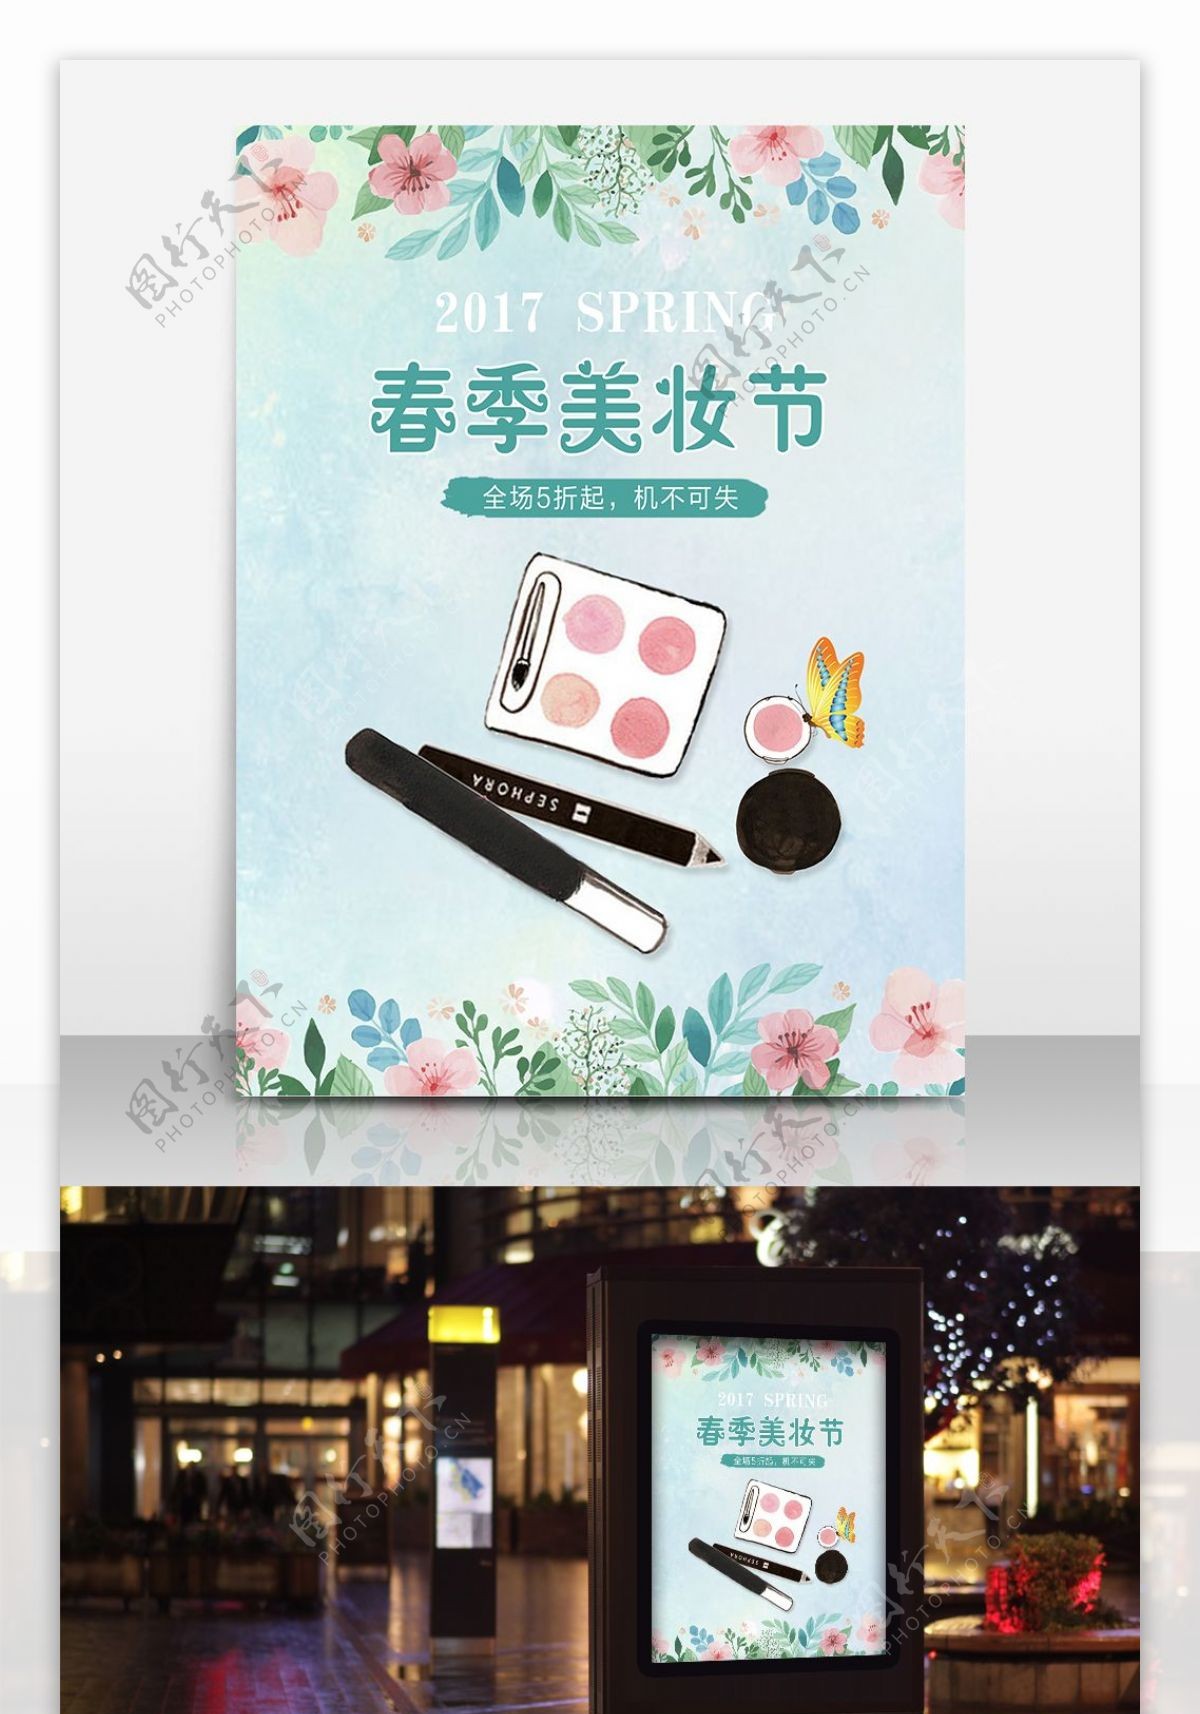 水粉春季美妆节女士用品优惠打折海报